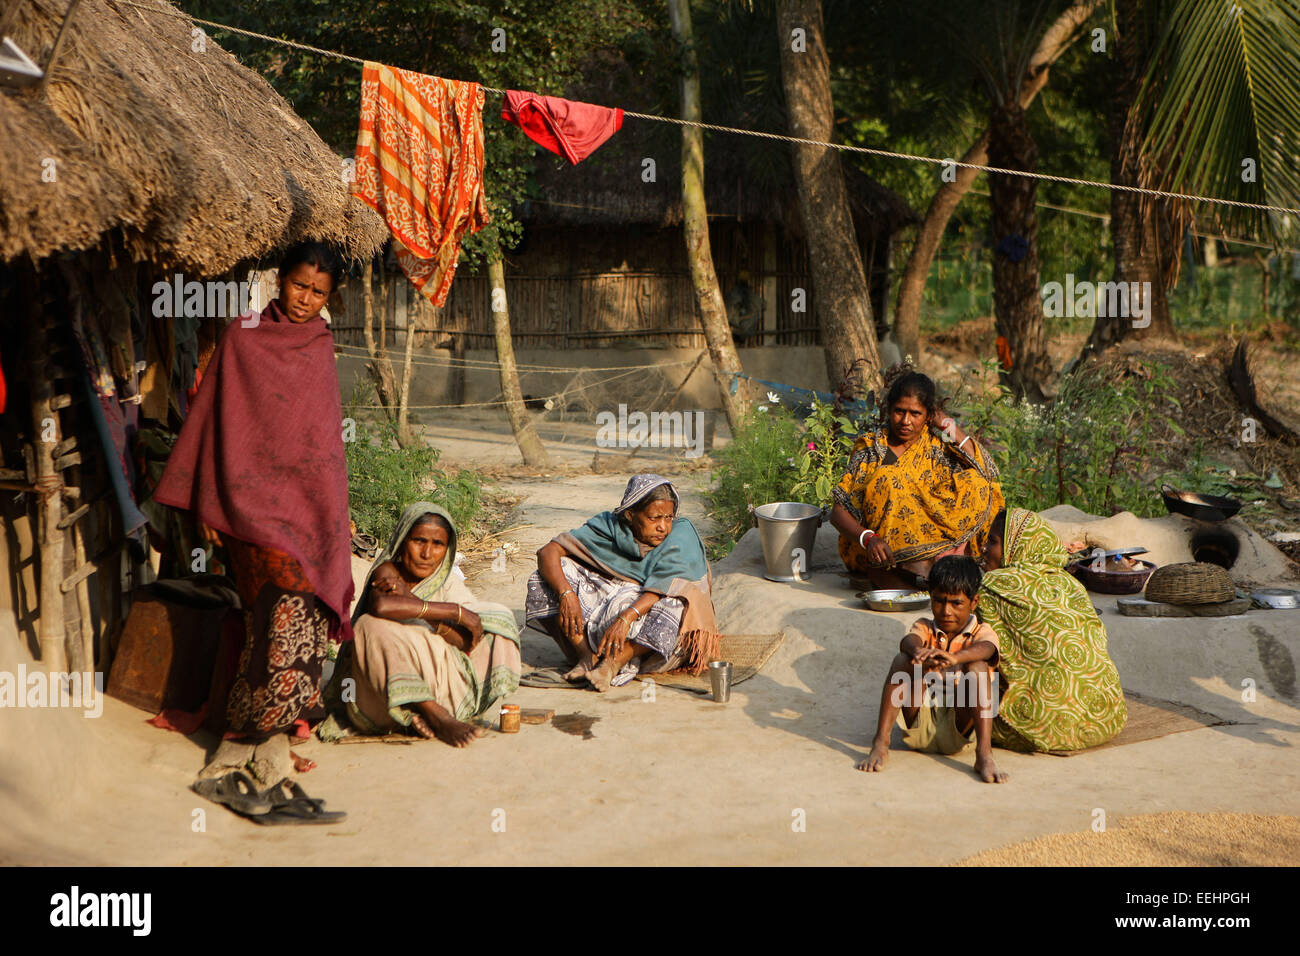 (150119)--Kalkutta, 19. Januar 2015 (Xinhua)--Dorfbewohner sitzen in einem Hof in einem Dorf im Bereich Sunderbans im Ganges-Delta in West Bengalen, Indien, 17. Januar 2015. Das Ganges Dreieck ist ein Flussdelta in der südasiatischen Region von Bengal, bestehend aus Bangladesch und der Bundesstaat West Bengal, Indien. Es ist die weltweit größte Delta. Als UNESCO-Weltkulturerbe schützt die Sunderbans Gebiet von Indien viele Mangrovenwald und Tiere. Lokalen Bevölkerung leben von Fischfang, Landwirtschaft und verwenden die Fähren pendeln. Viele Dörfer verwenden Solarenergie aufgrund des Fehlens von normalen Stromversorgung. (Xinhua/Zh Stockfoto